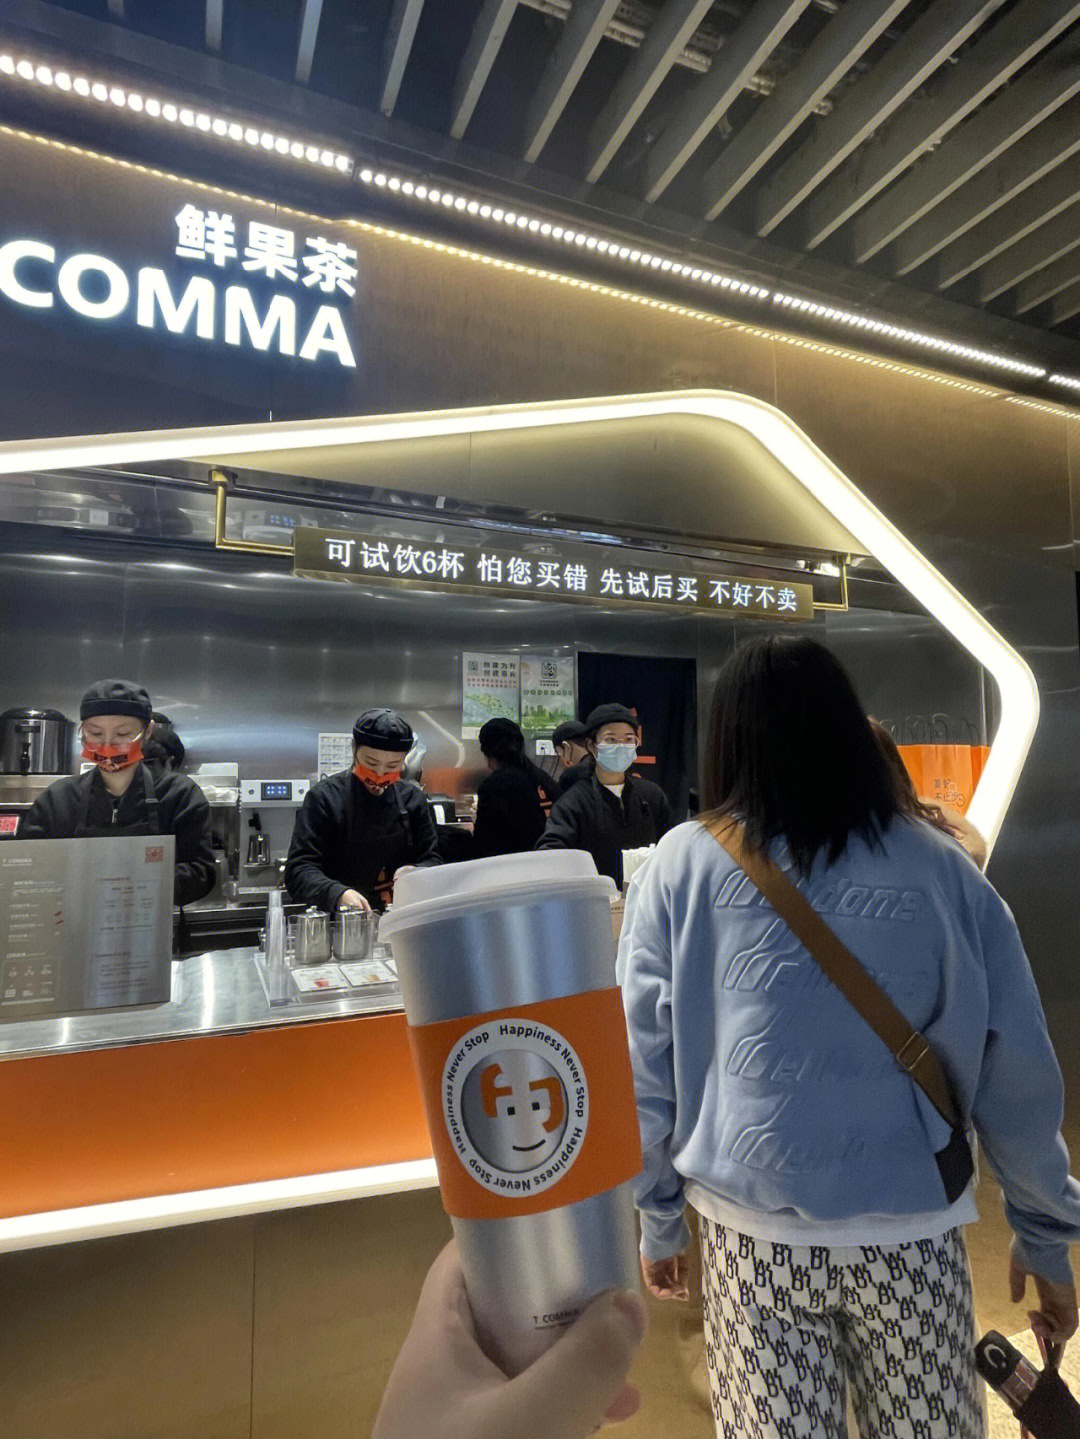 91南京的小伙伴快去新街口地铁商业街打卡t comma家的果茶,而且有50